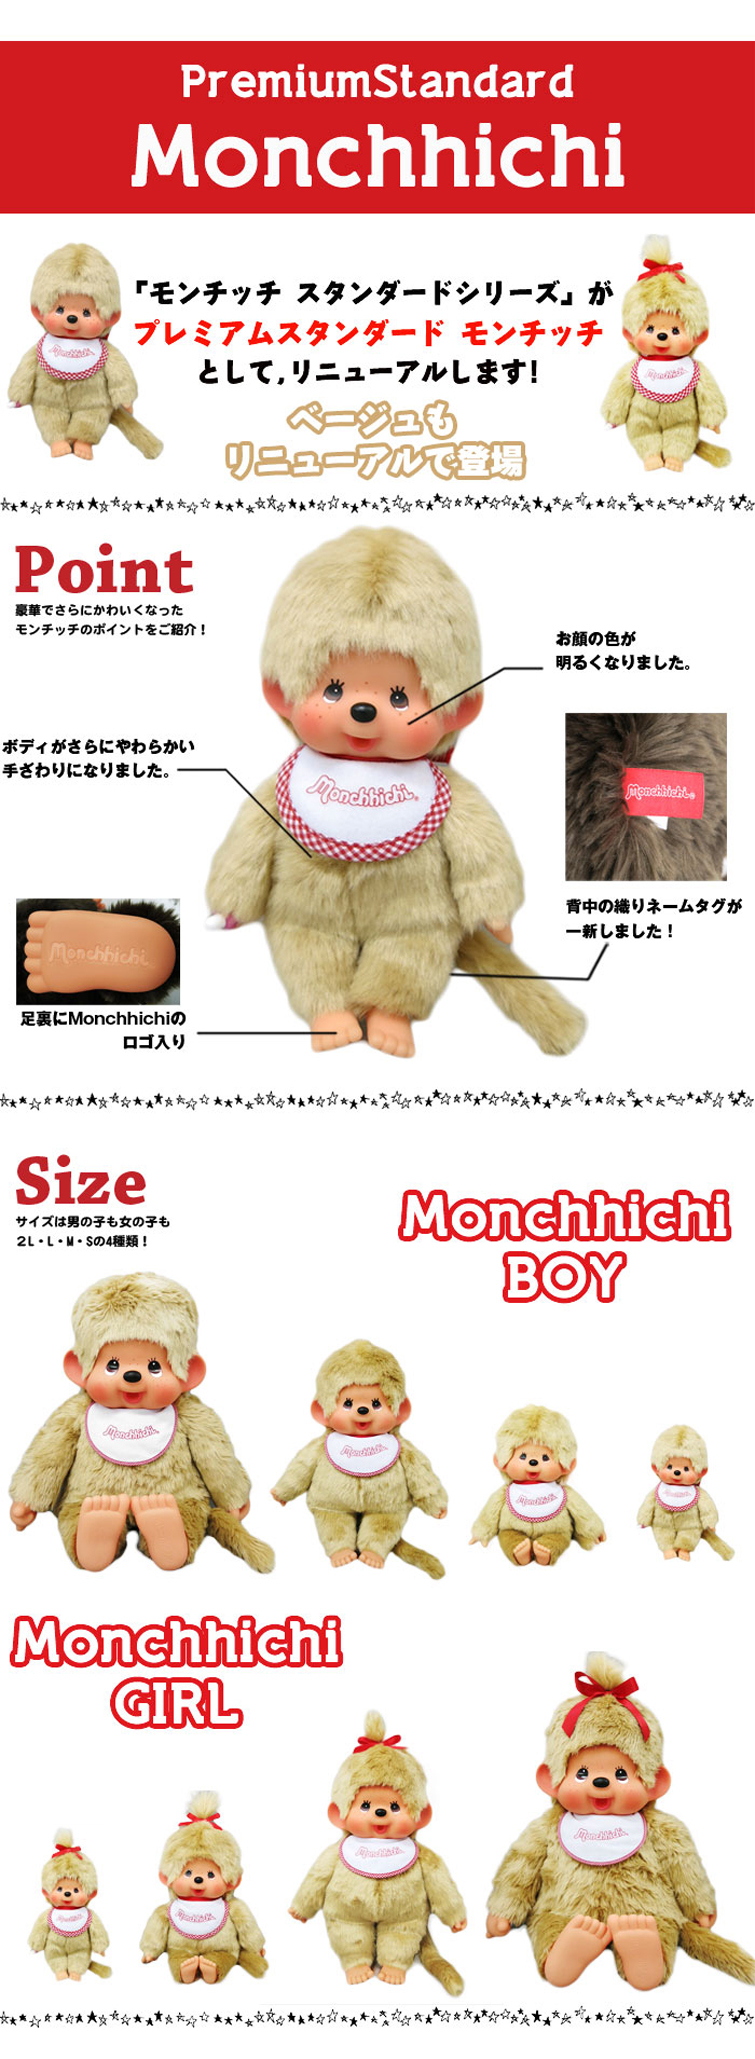 人気総合 モンチッチ おもちゃ/人形